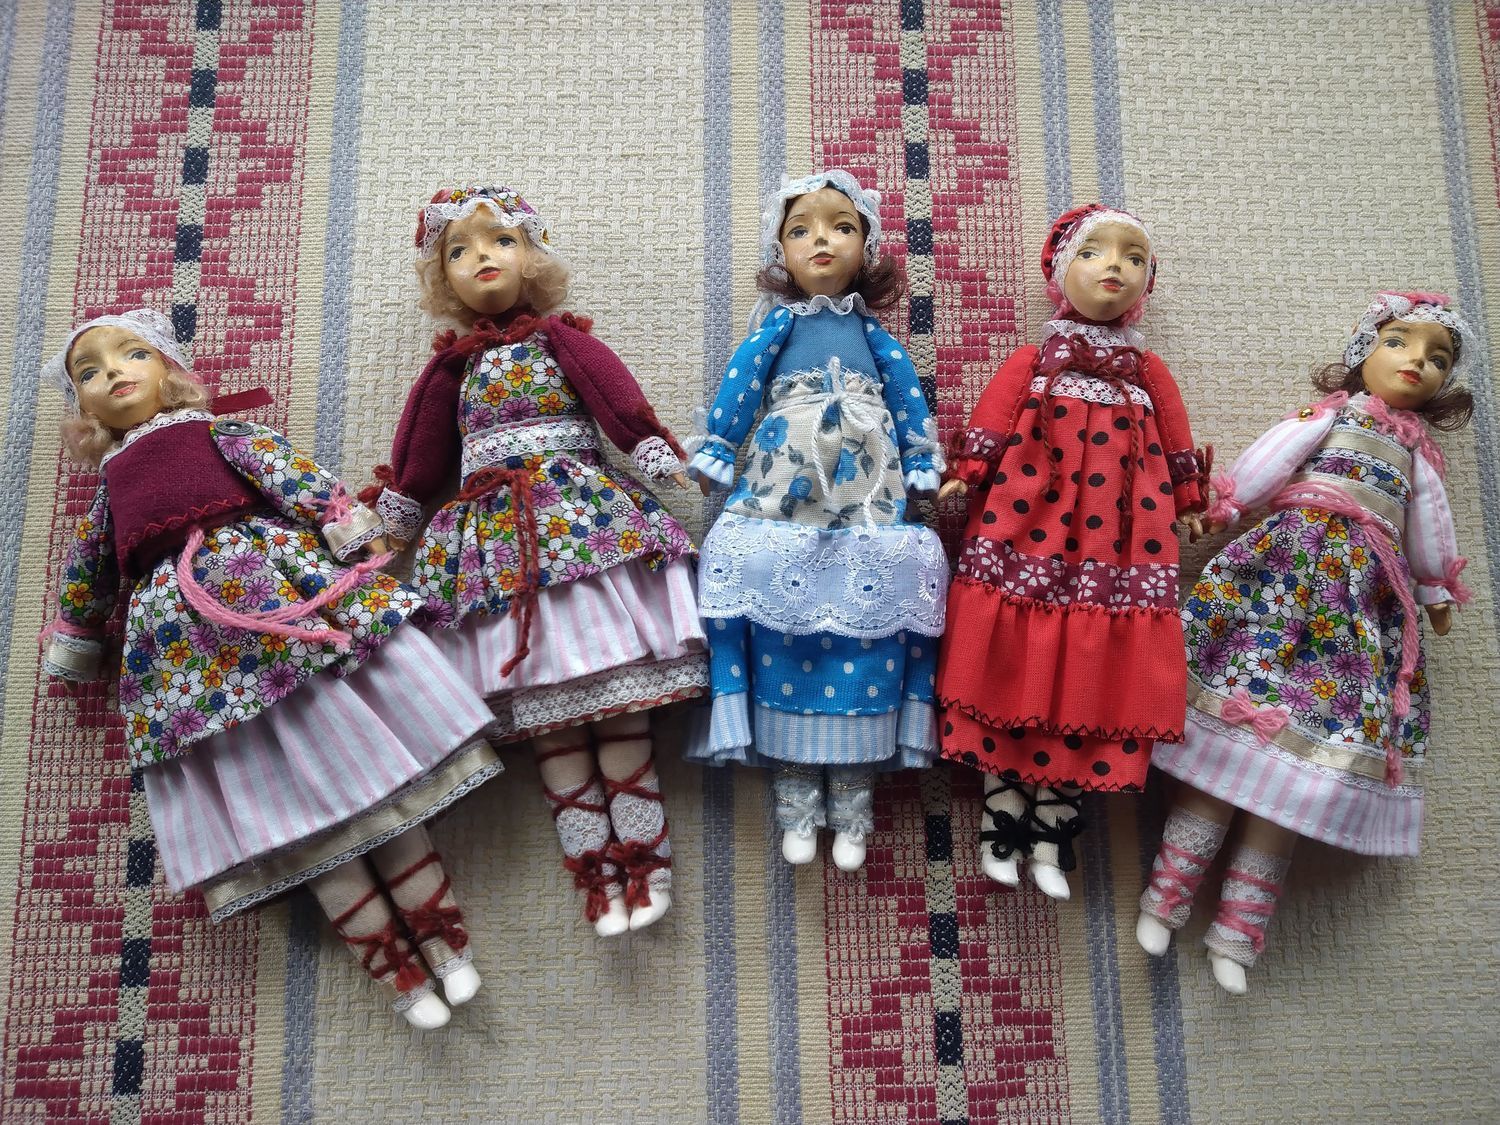 Кукла в белорусском костюме